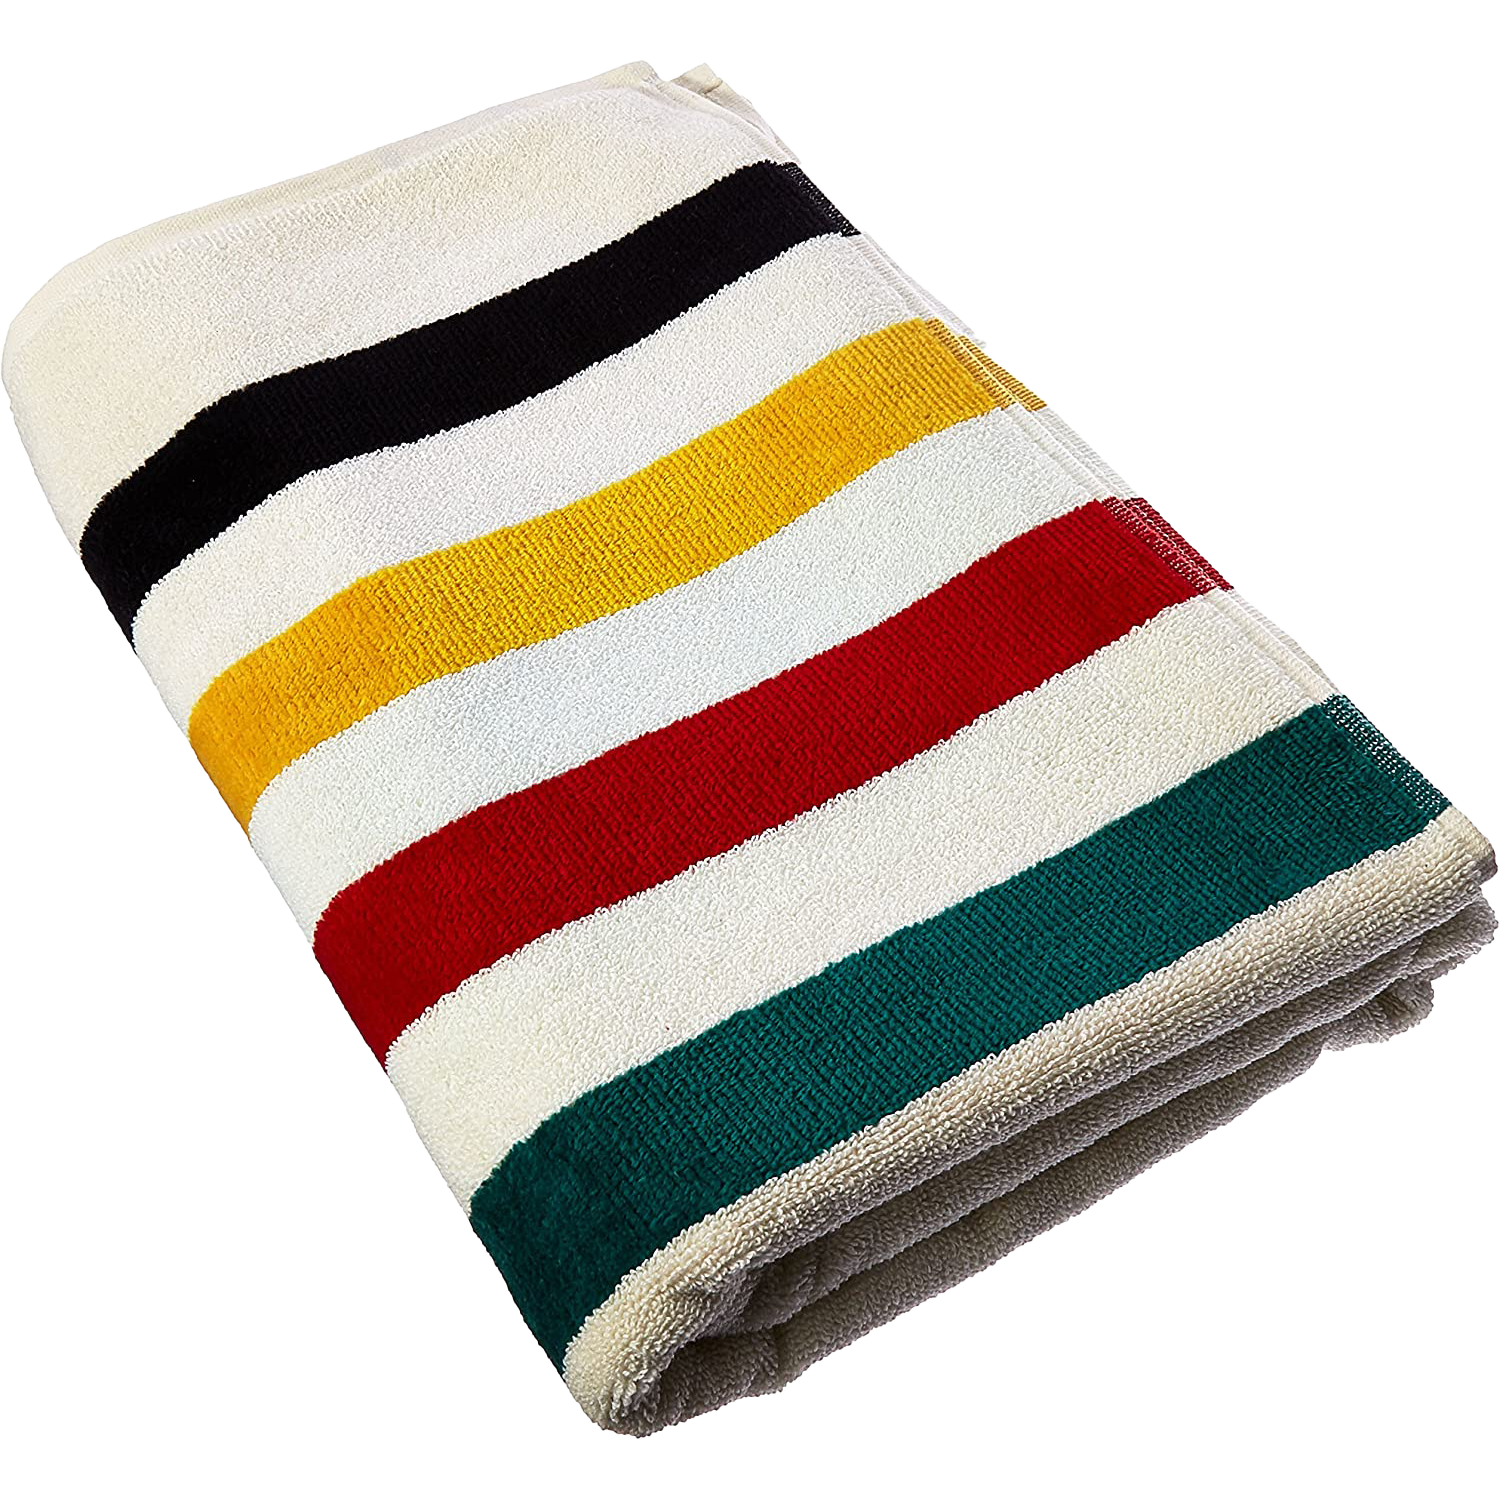 Pendelton National Park Blanket Towel.